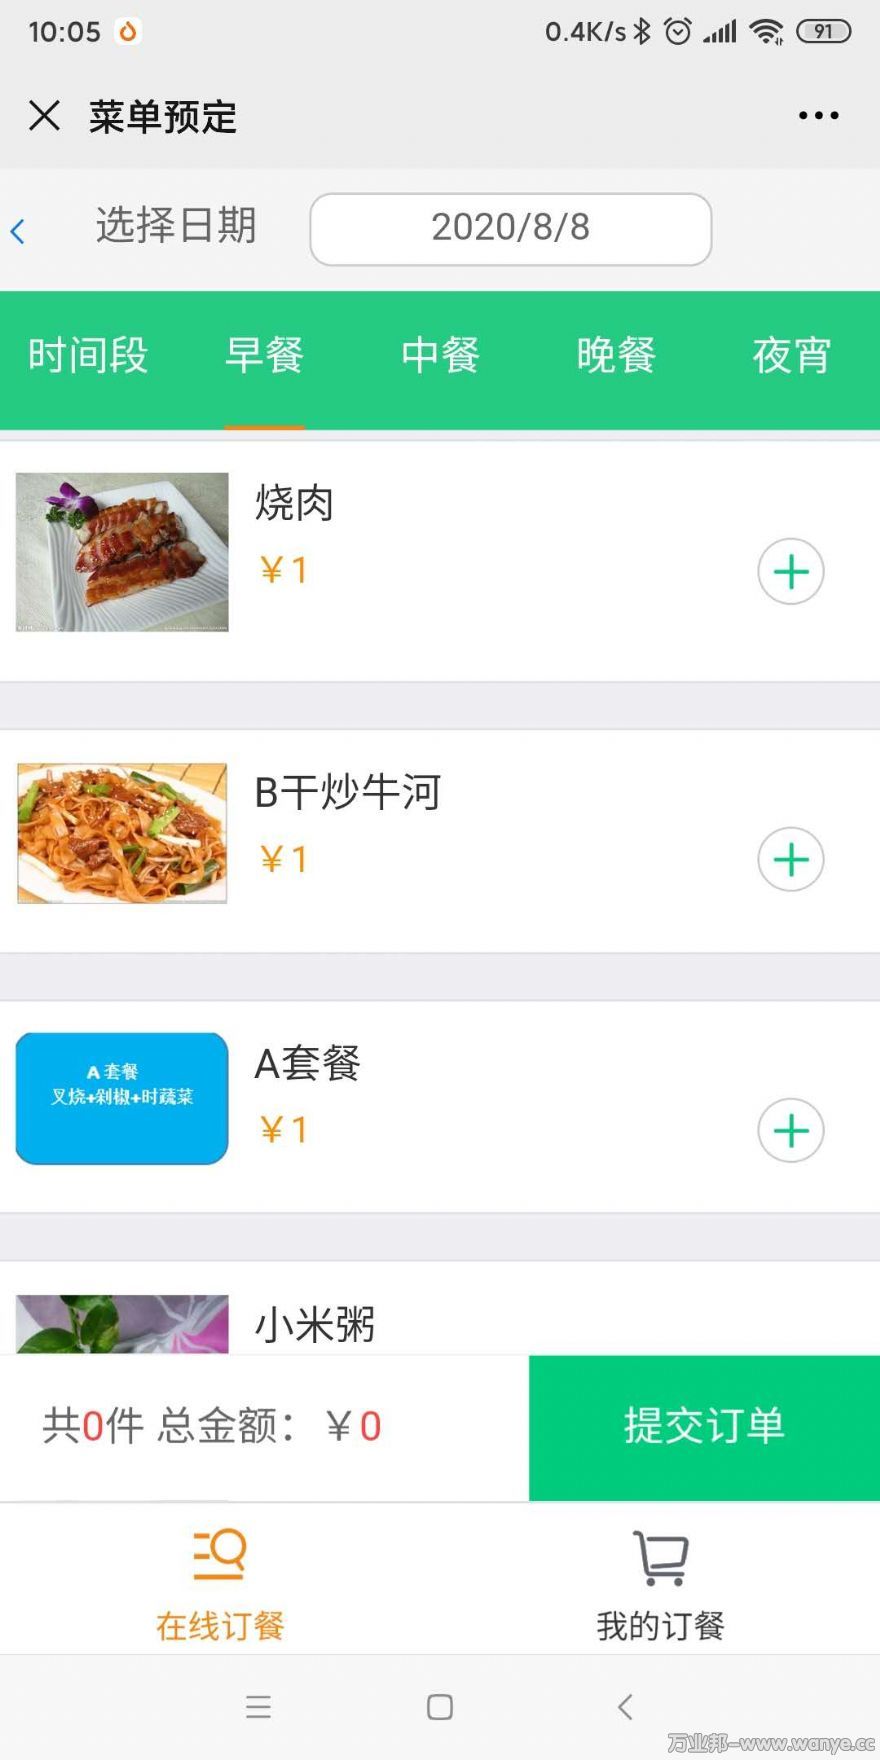 北京食堂订餐系统供应商支持功能定制上门安装/